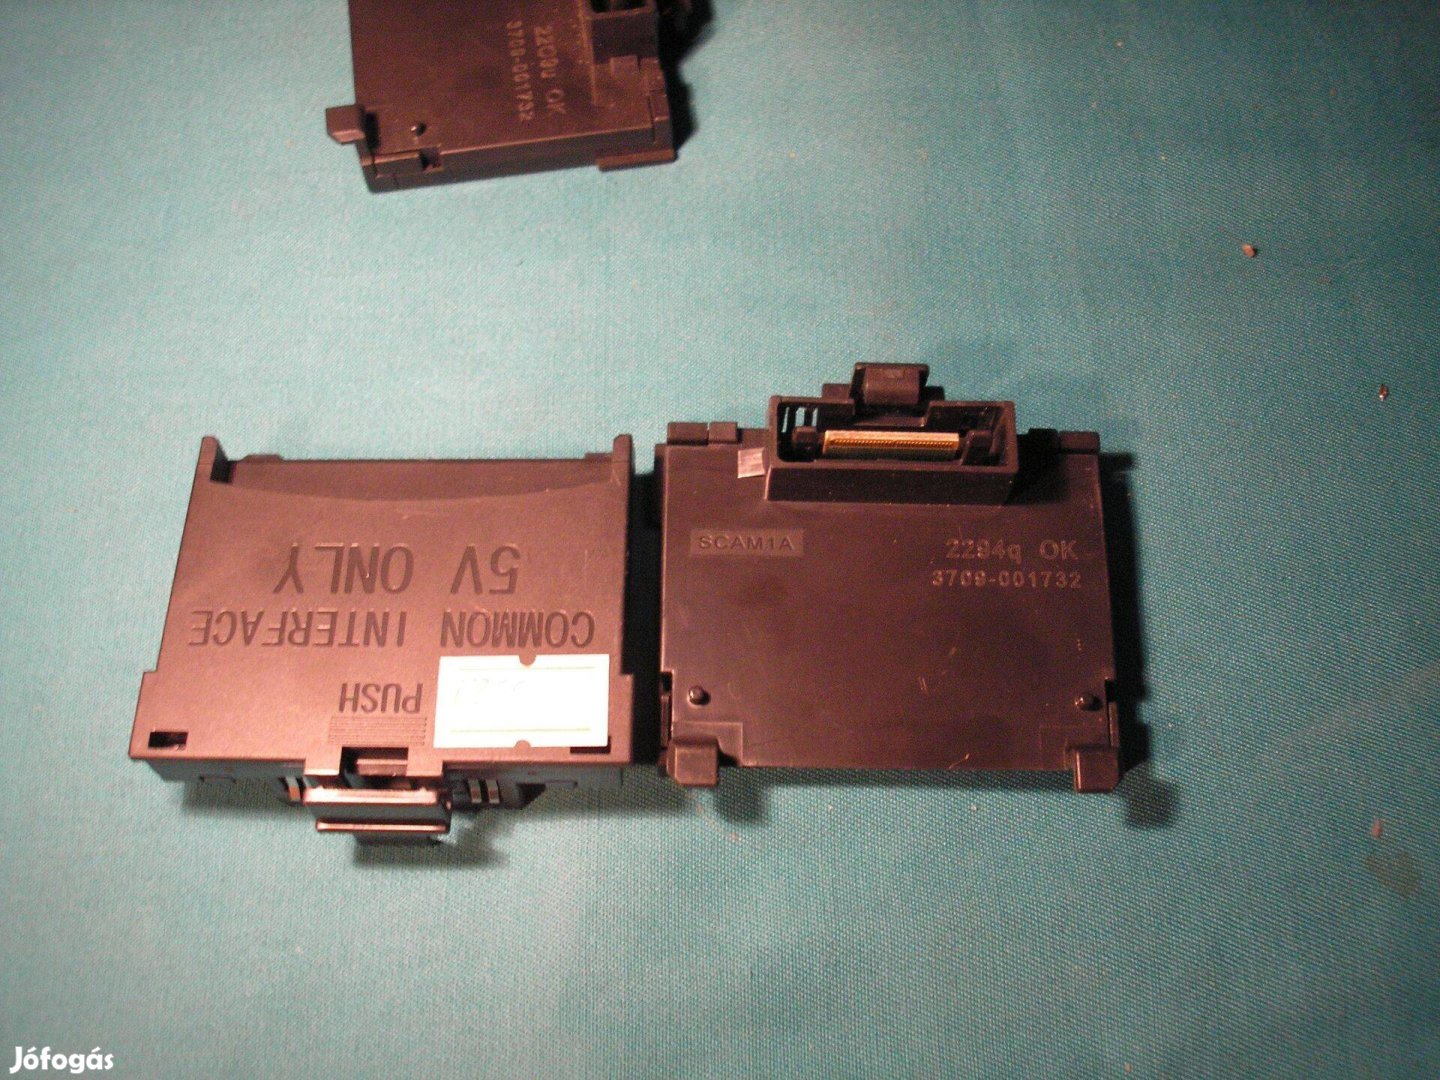 5529 Samsung Common Interface csatlakazó adapter CI modul 3709-001732